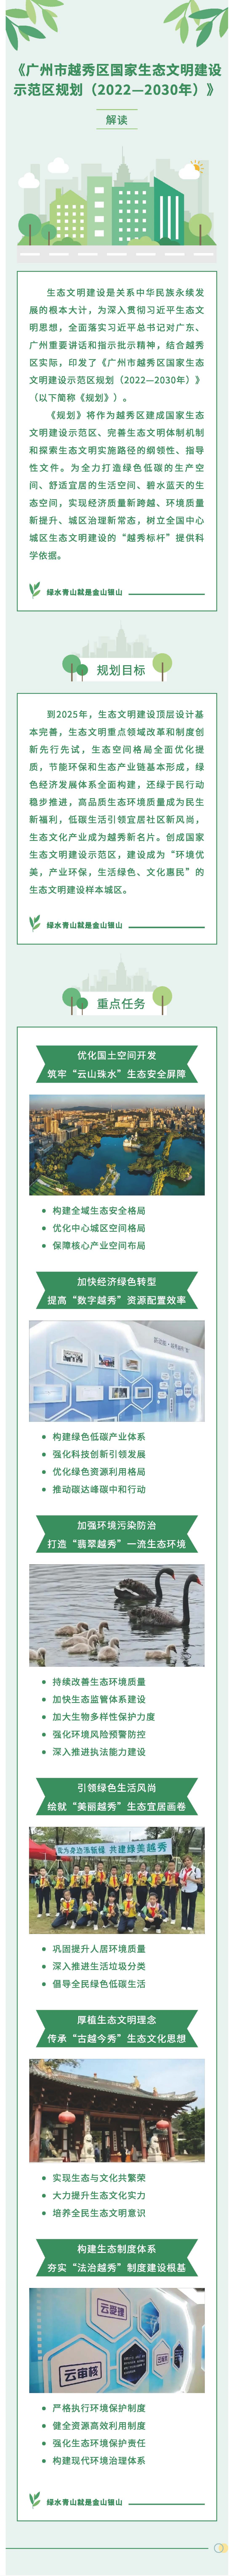 《广州市越秀区
生态文明建设示范区规划（2022—2030年）》一图读懂.jpg